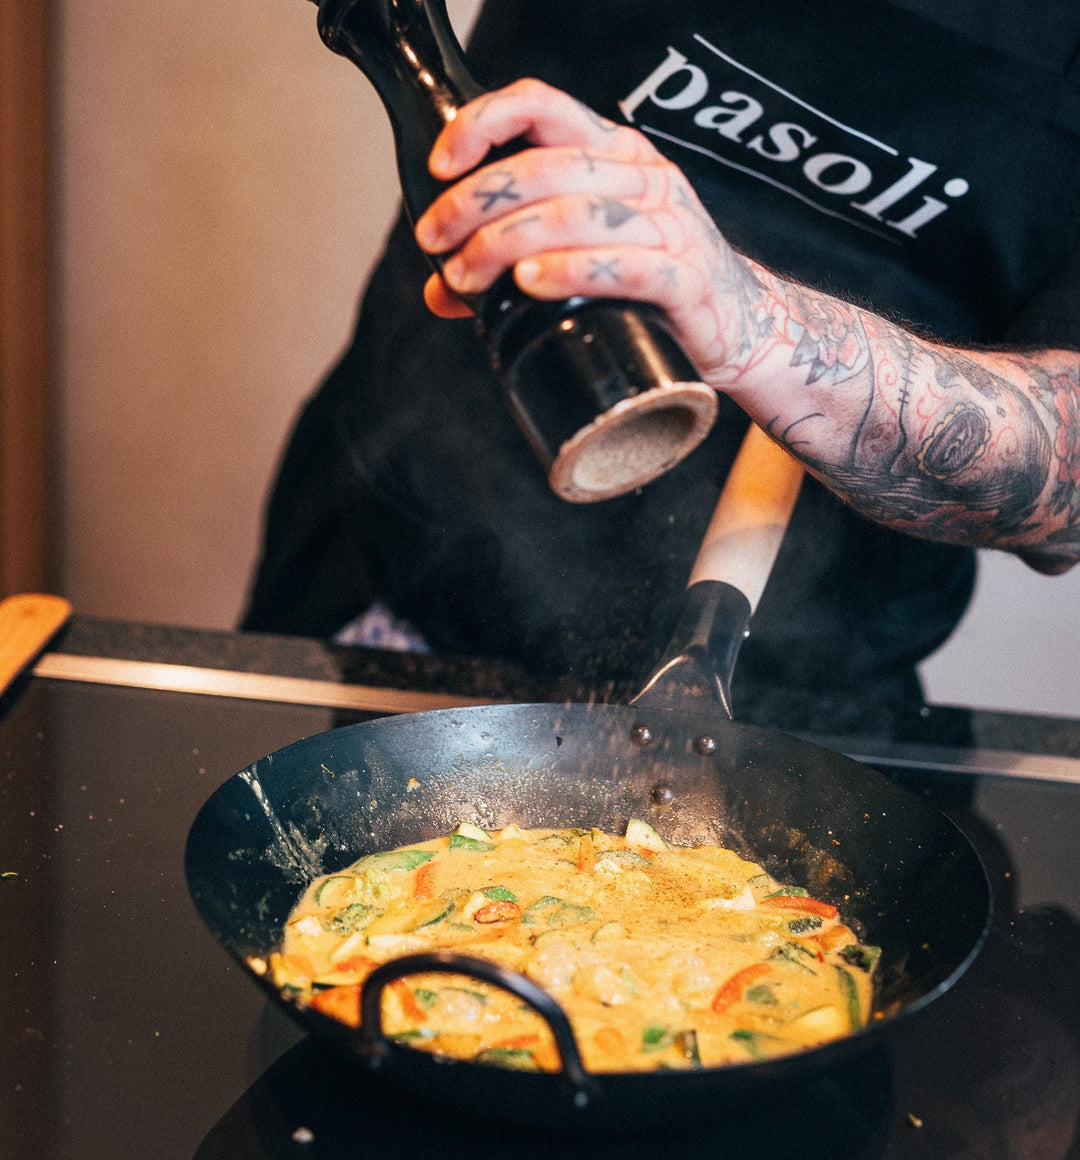 Il nostro wok piatto marchiato pasoli - pasoli